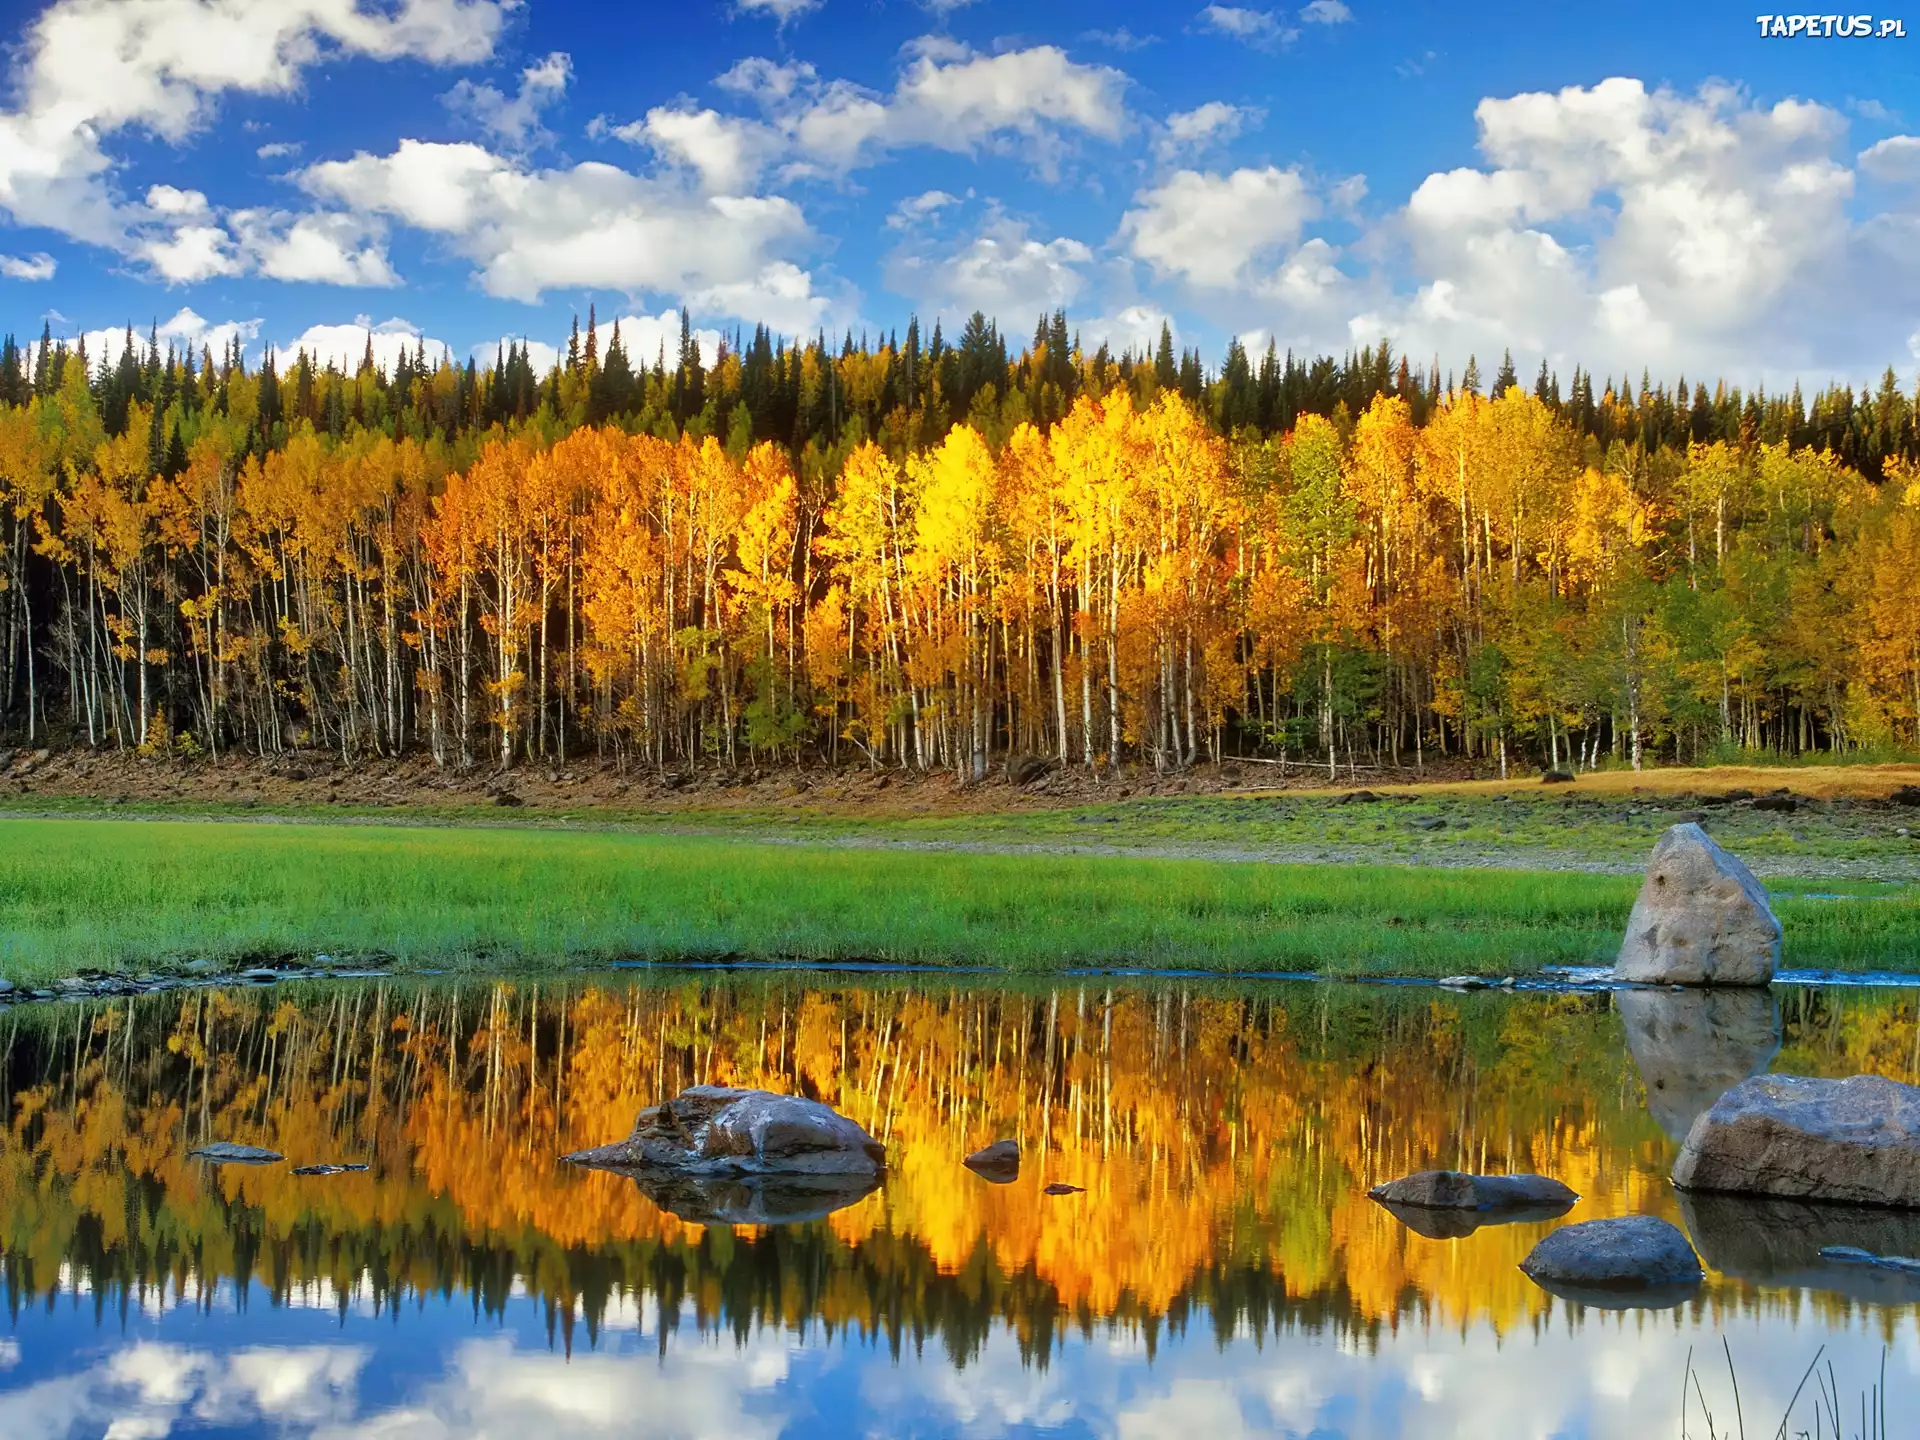 Описание фотографии природа. Осень озеро. Пейзажи России. Осень в Сибири. Осенний пейзаж фото.